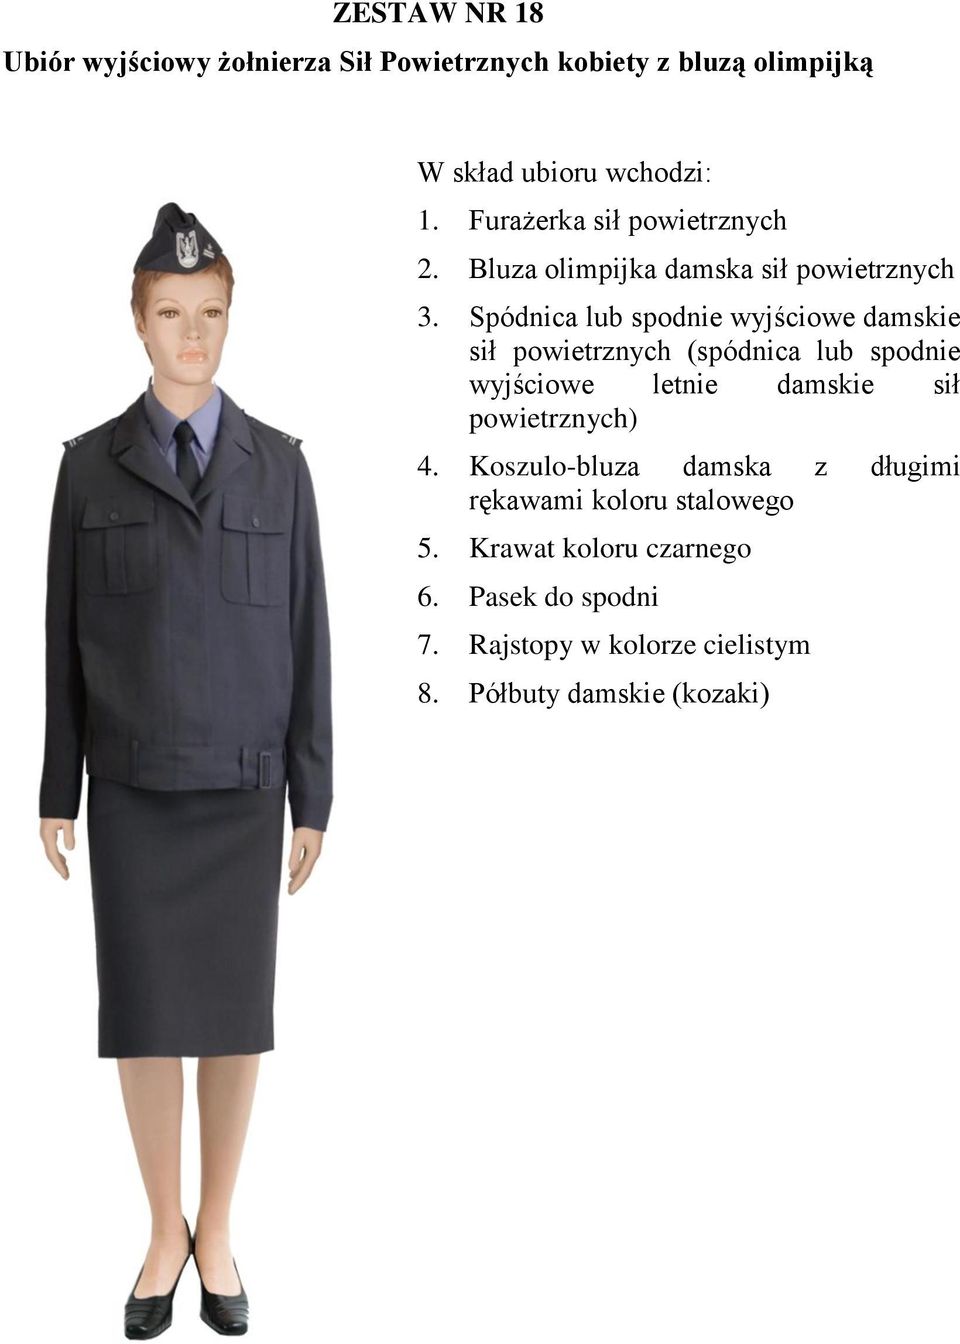 Spódnica lub spodnie wyjściowe damskie sił powietrznych (spódnica lub spodnie wyjściowe letnie damskie sił